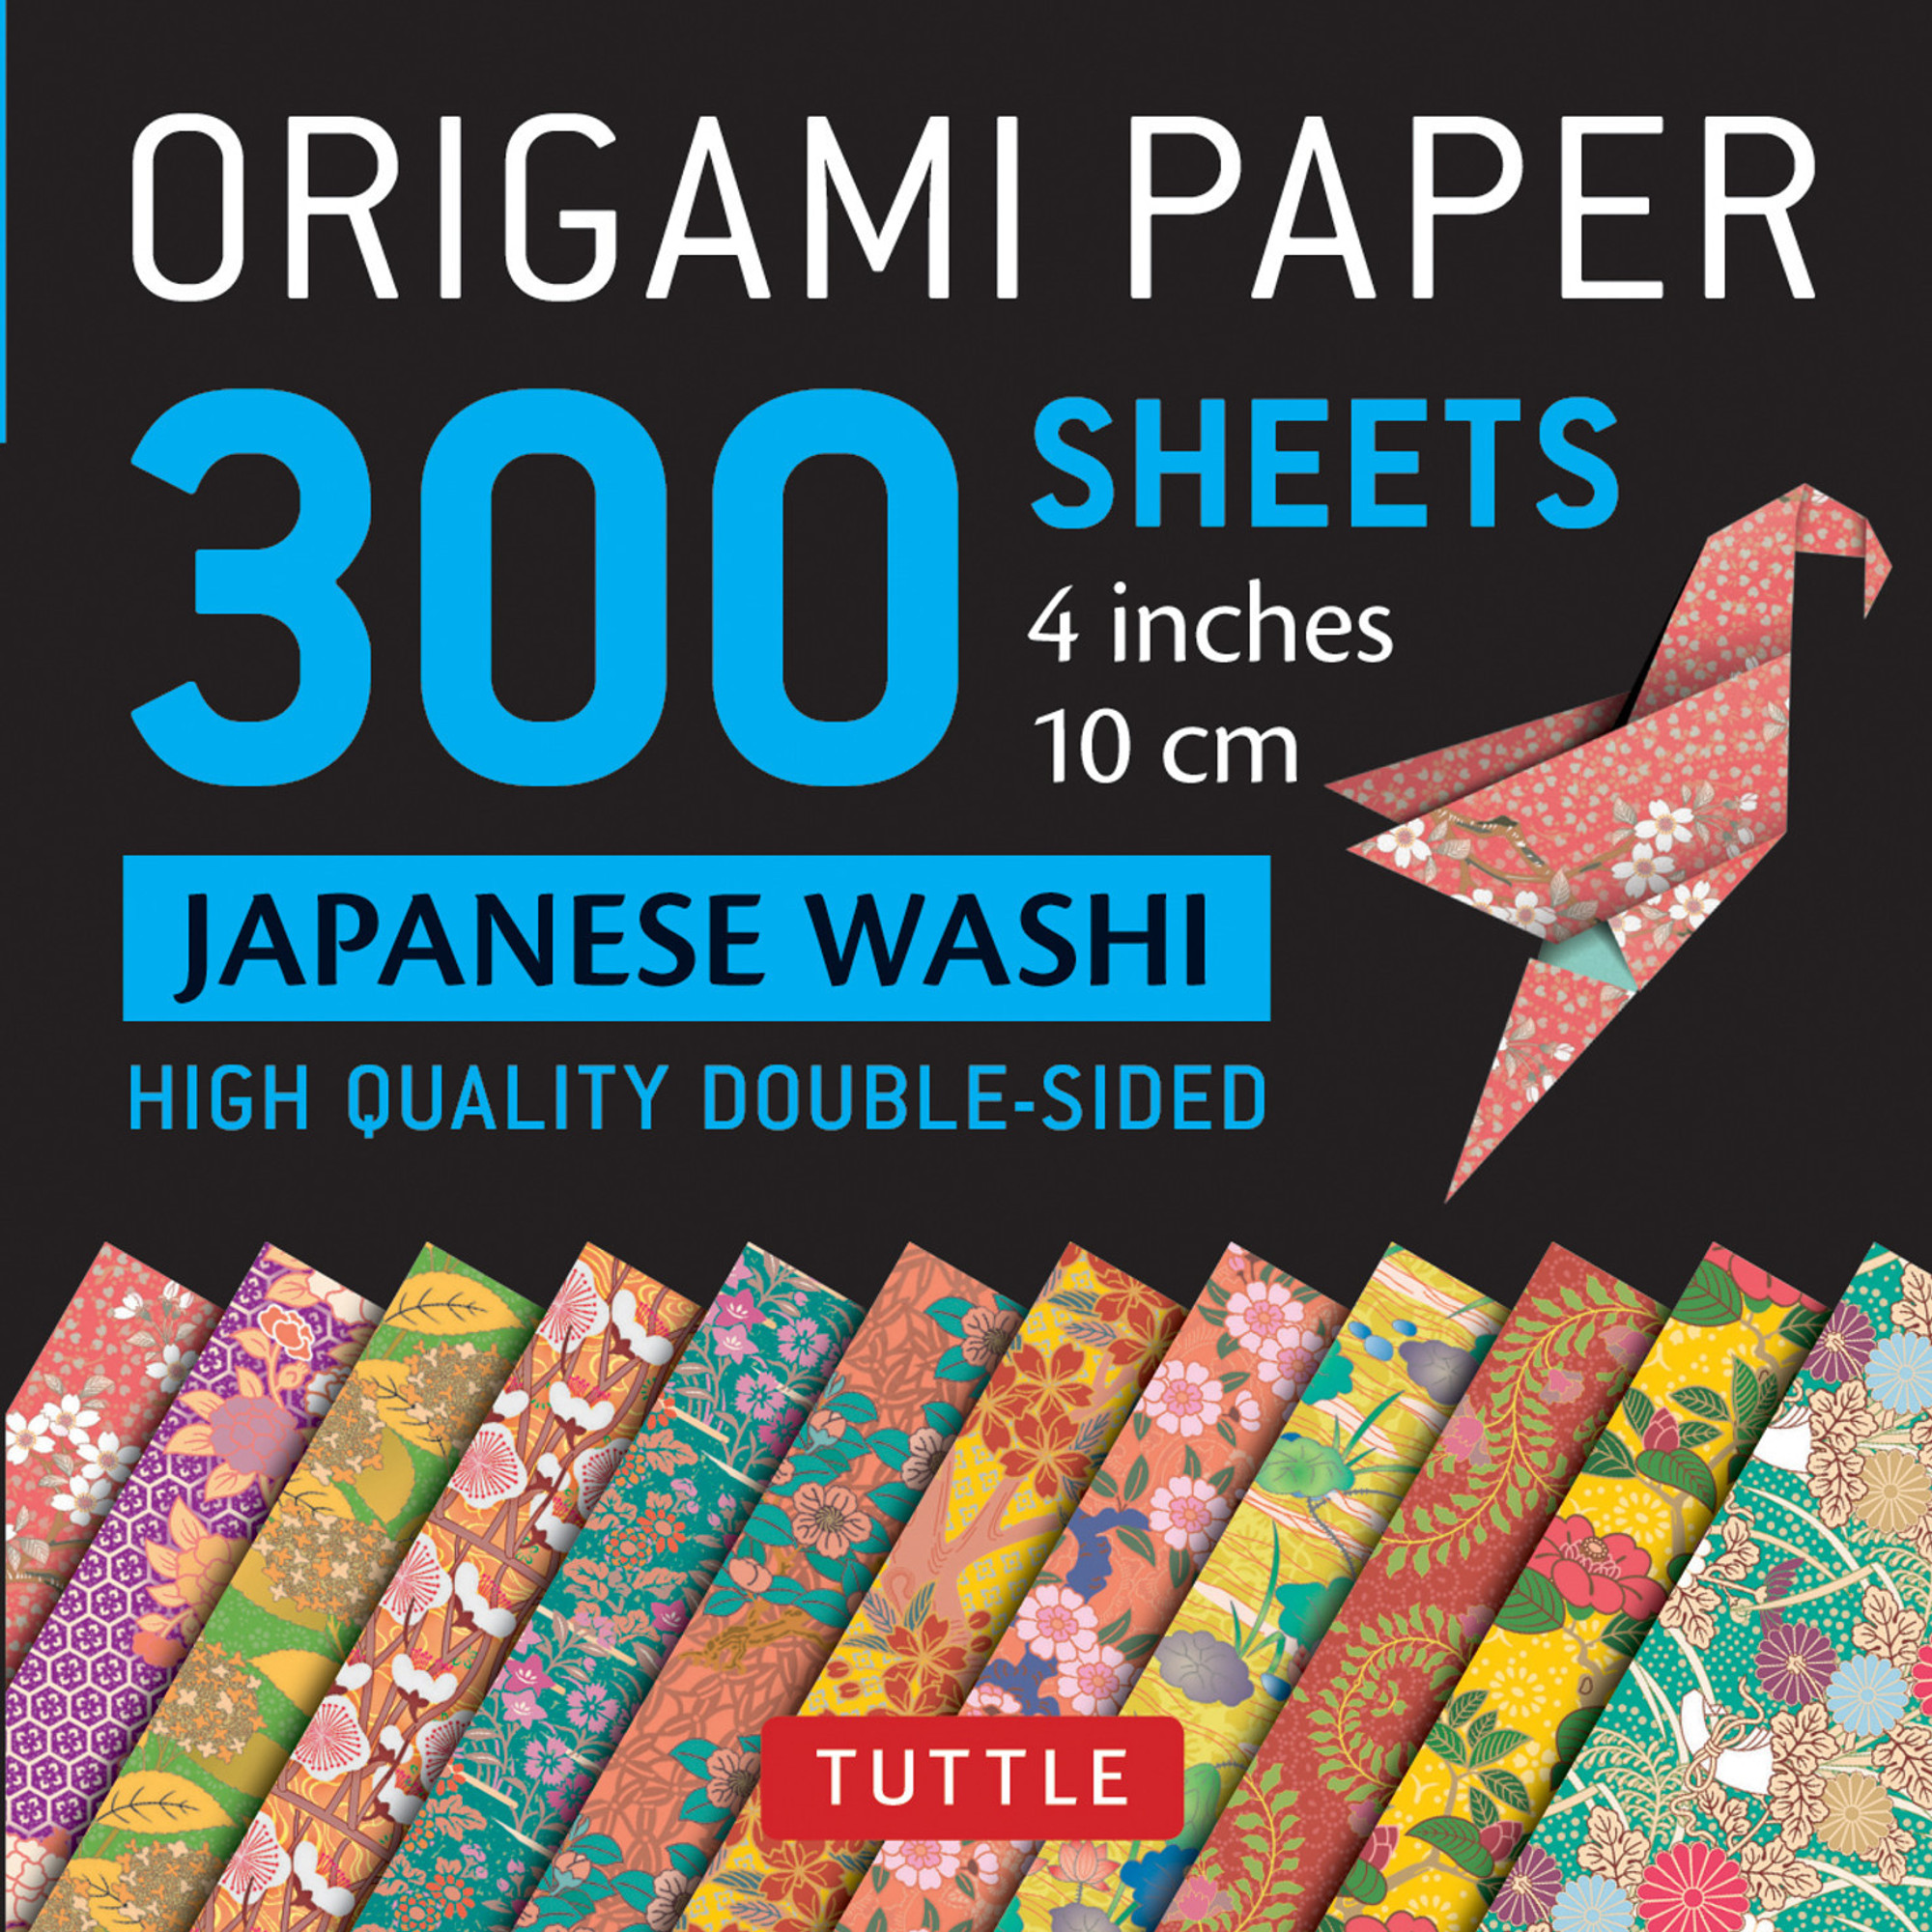 Origami Paper 300 Sheets Japanese Washi Patterns 4 10 Cm Tuttle Publishing